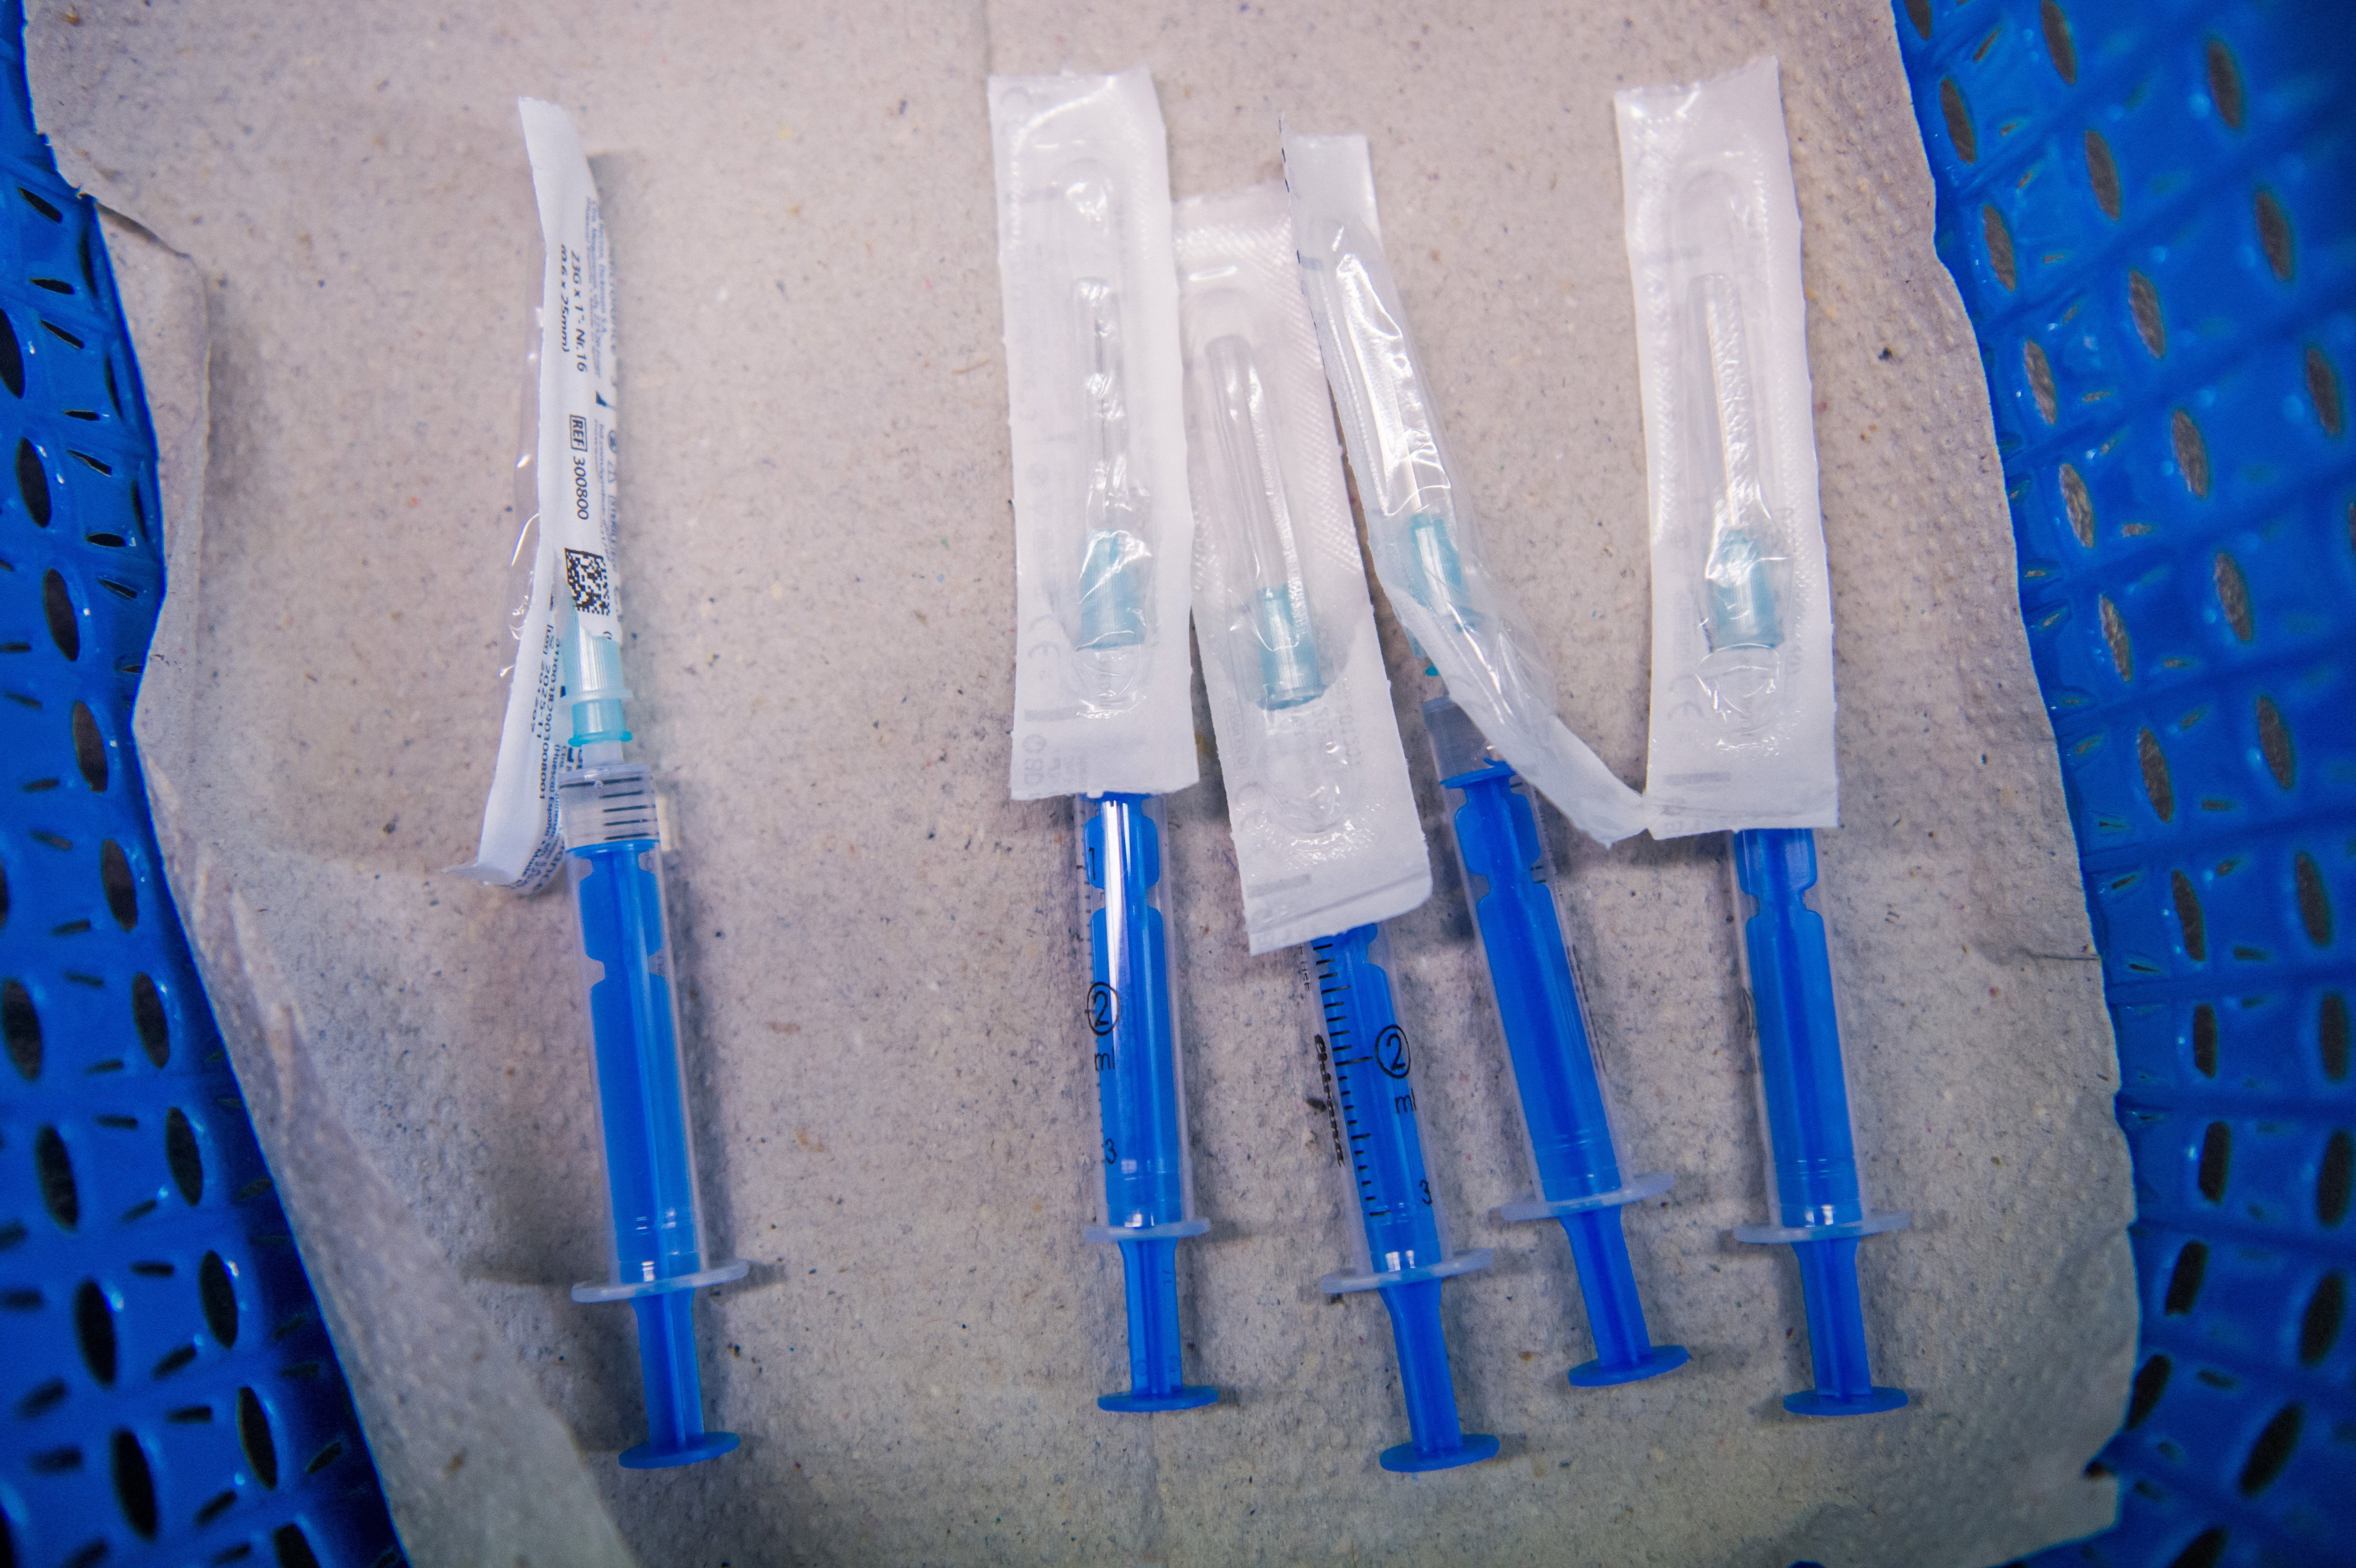 A DK egészségpolitikusa szerint rossz fecskendőket küldenek a vakcinák mellé